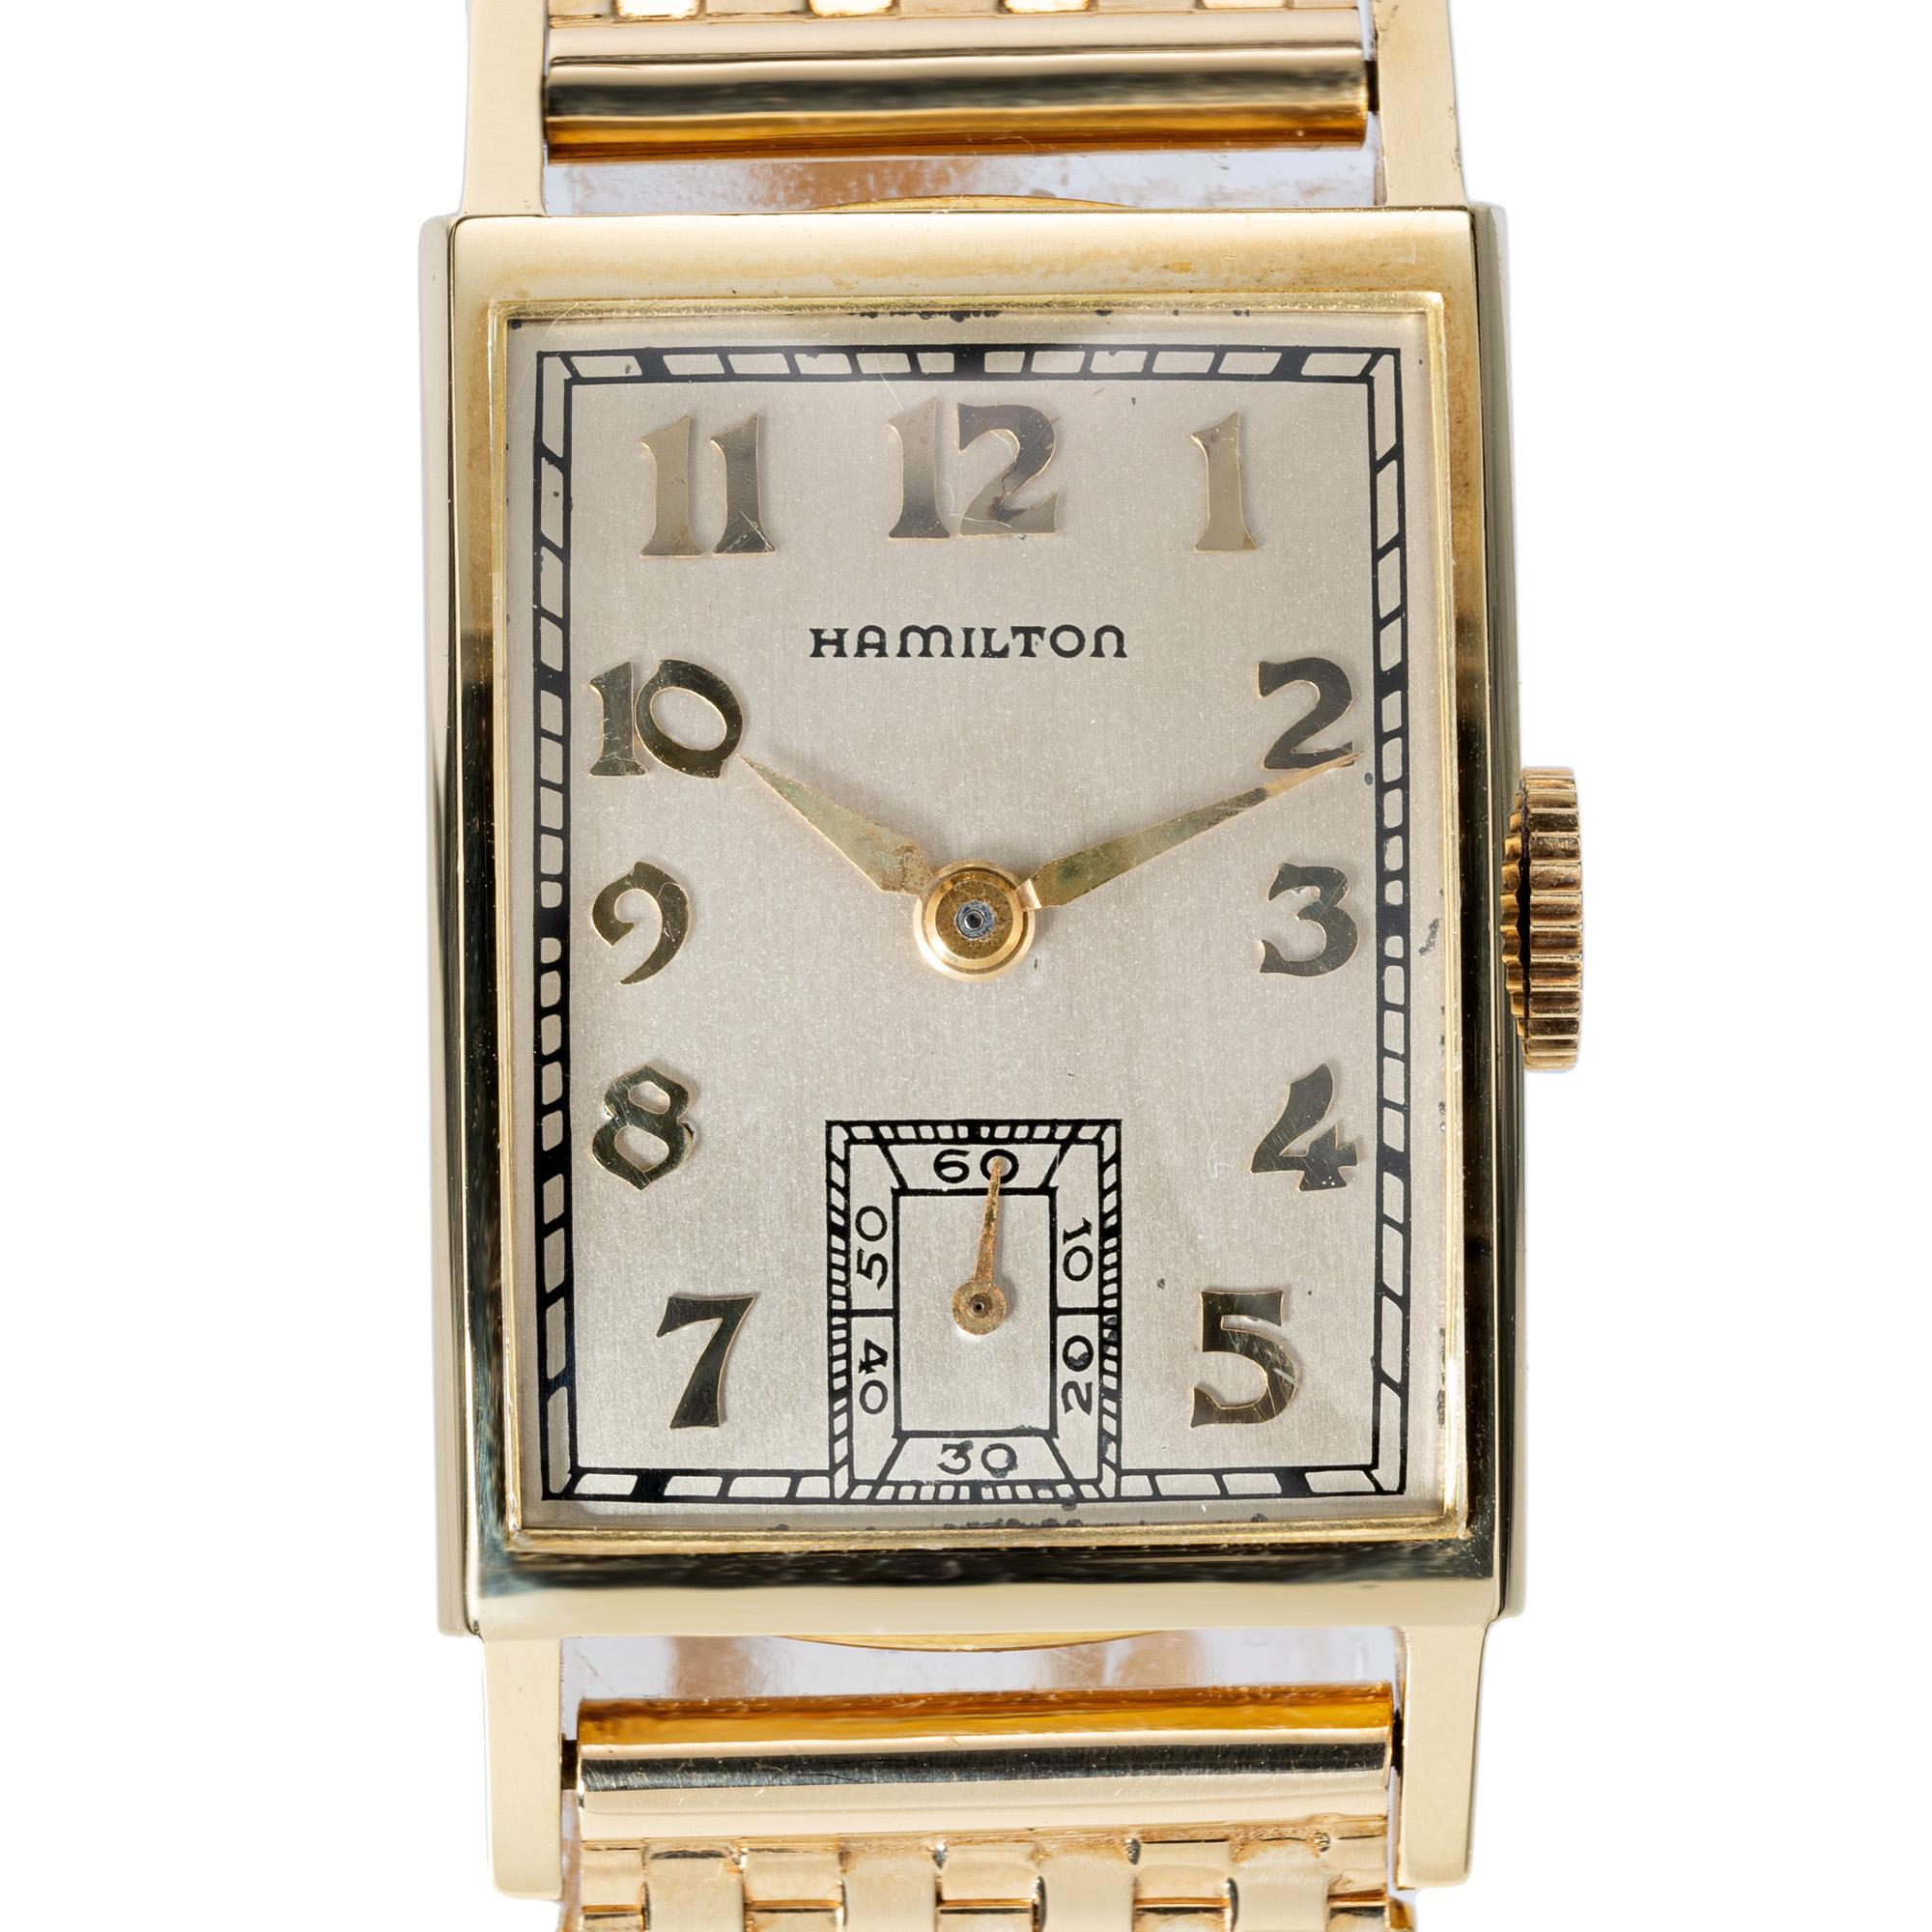 Montre-bracelet Hamilton en or jaune 14k des années 1950. Cadran rectangulaire avec 9 rangs de mailles, bracelet en or jaune 14k avec boucle de sécurité rabattable. Garantie complète d'un an. La longueur de la bande est de 6 3/8 pouces

Longueur :